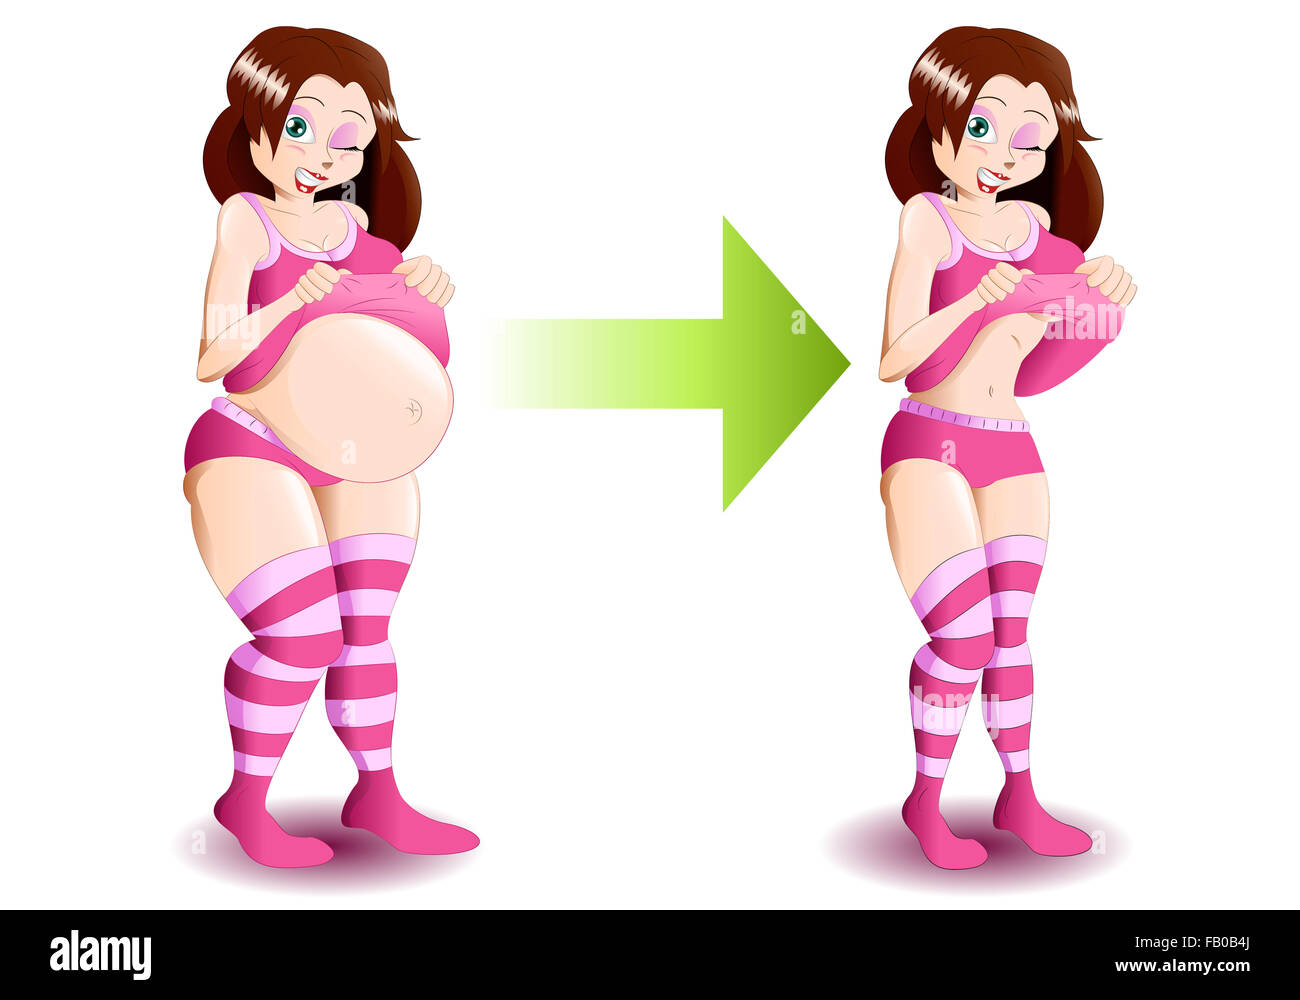 Abbildung von dem gleichen Mädchen, fat und slim - Gewichtsverlust, Ernährung, positive Veränderung Konzepte Stockfoto